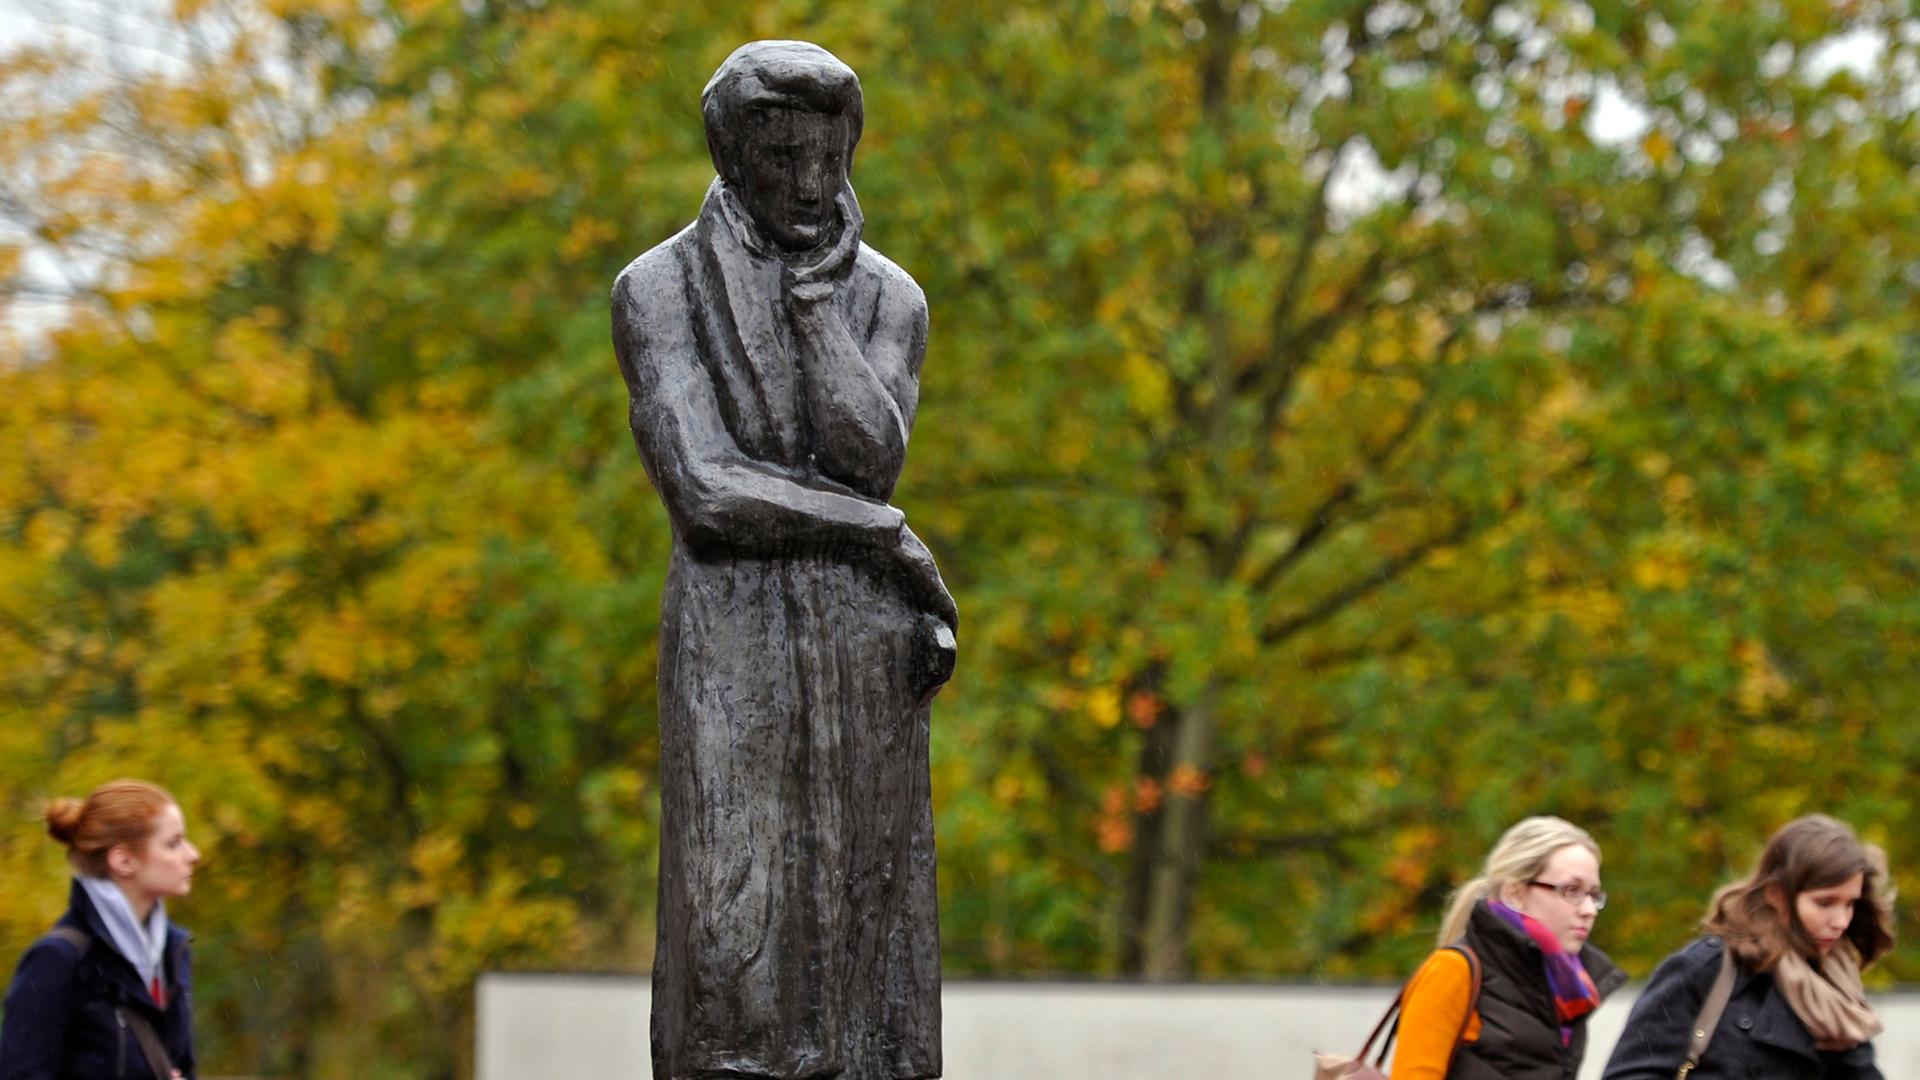 Frauen laufen am 16.10.2012 an einer Statue des Schriftstellers Heinrich Heine auf dem Gelände der Heinrich-Heine-Universität in Düsseldorf (Nordrhein-Westfalen) vorbei.